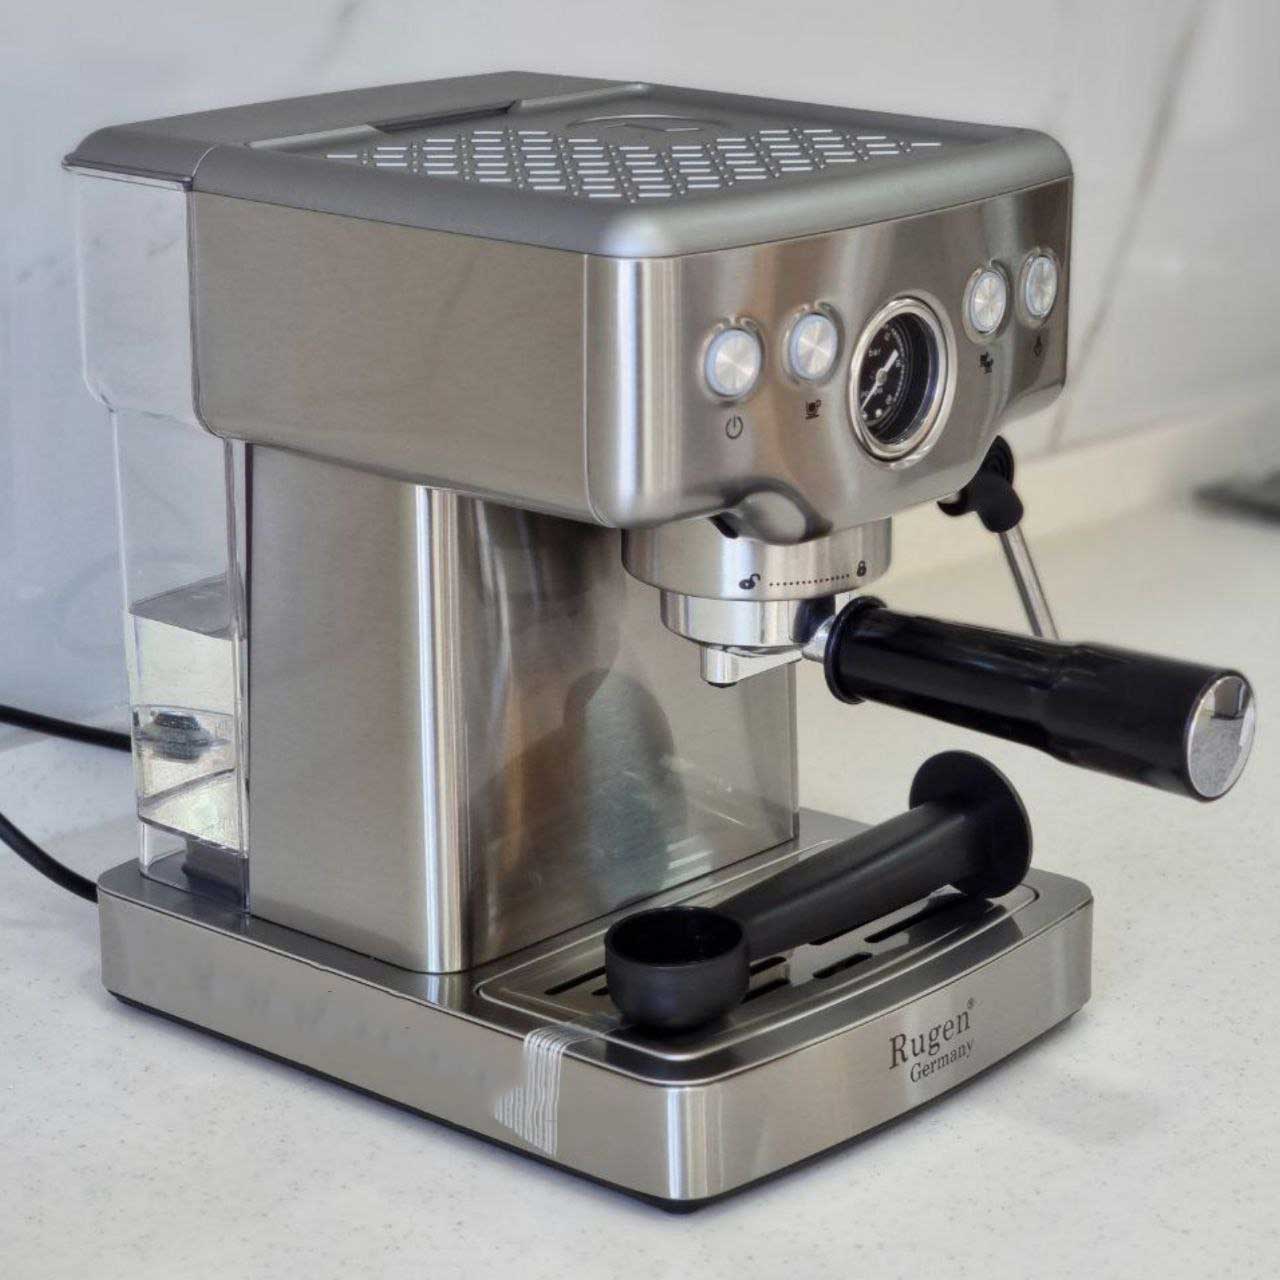 مشخصات اسپرسوساز روگن مدل espresso coffee machine Rugen RU-2910